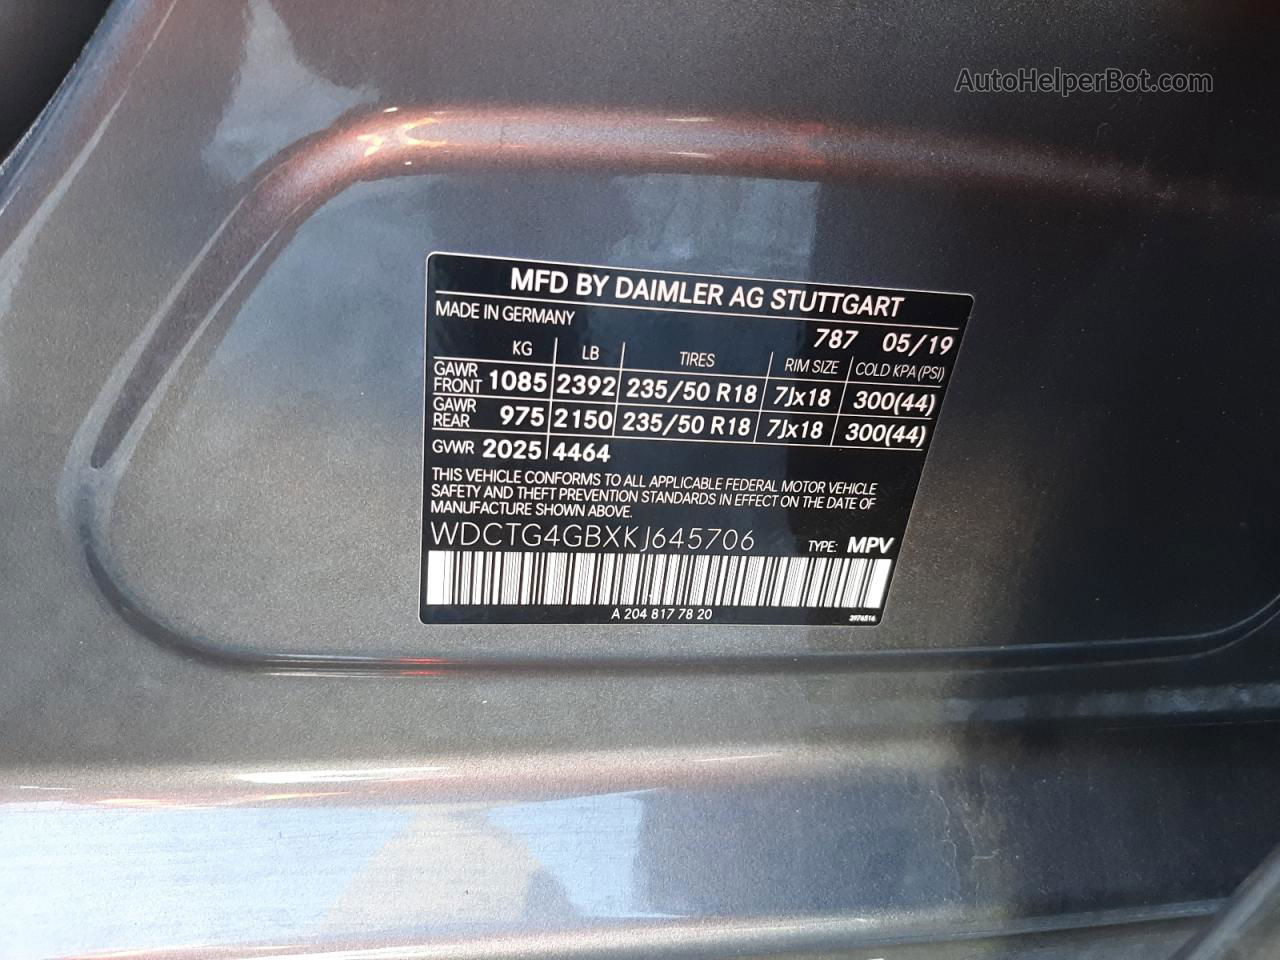 2019 Mercedes-benz Gla 250 4matic Угольный vin: WDCTG4GBXKJ645706